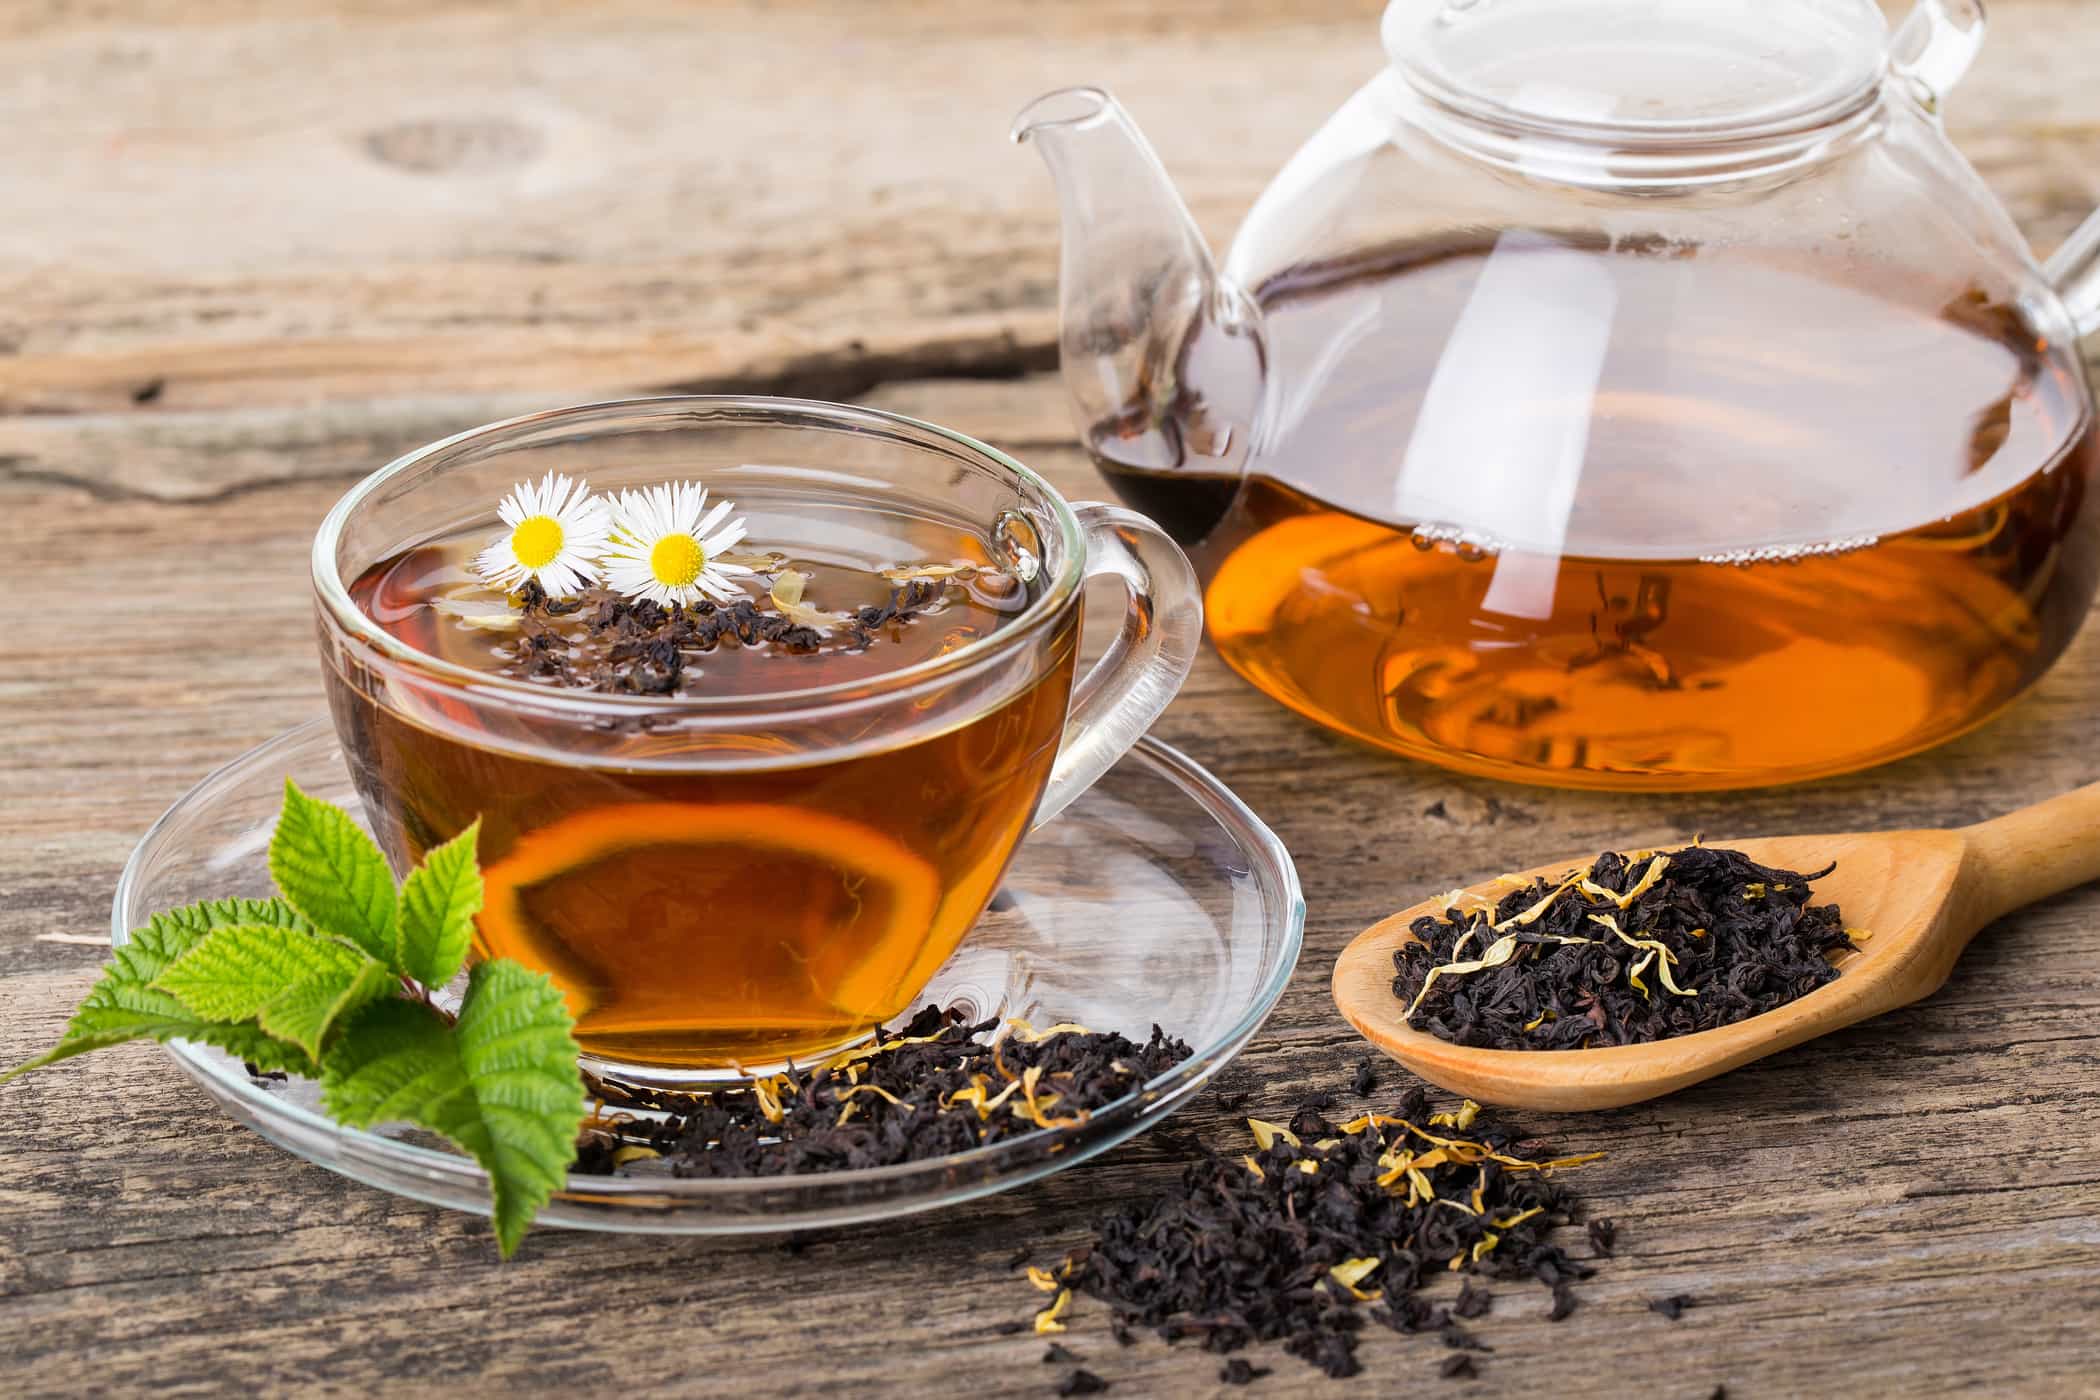 Hangisi Daha Sağlıklı: Poşet Çay mı, Tubruk Çayı mı?